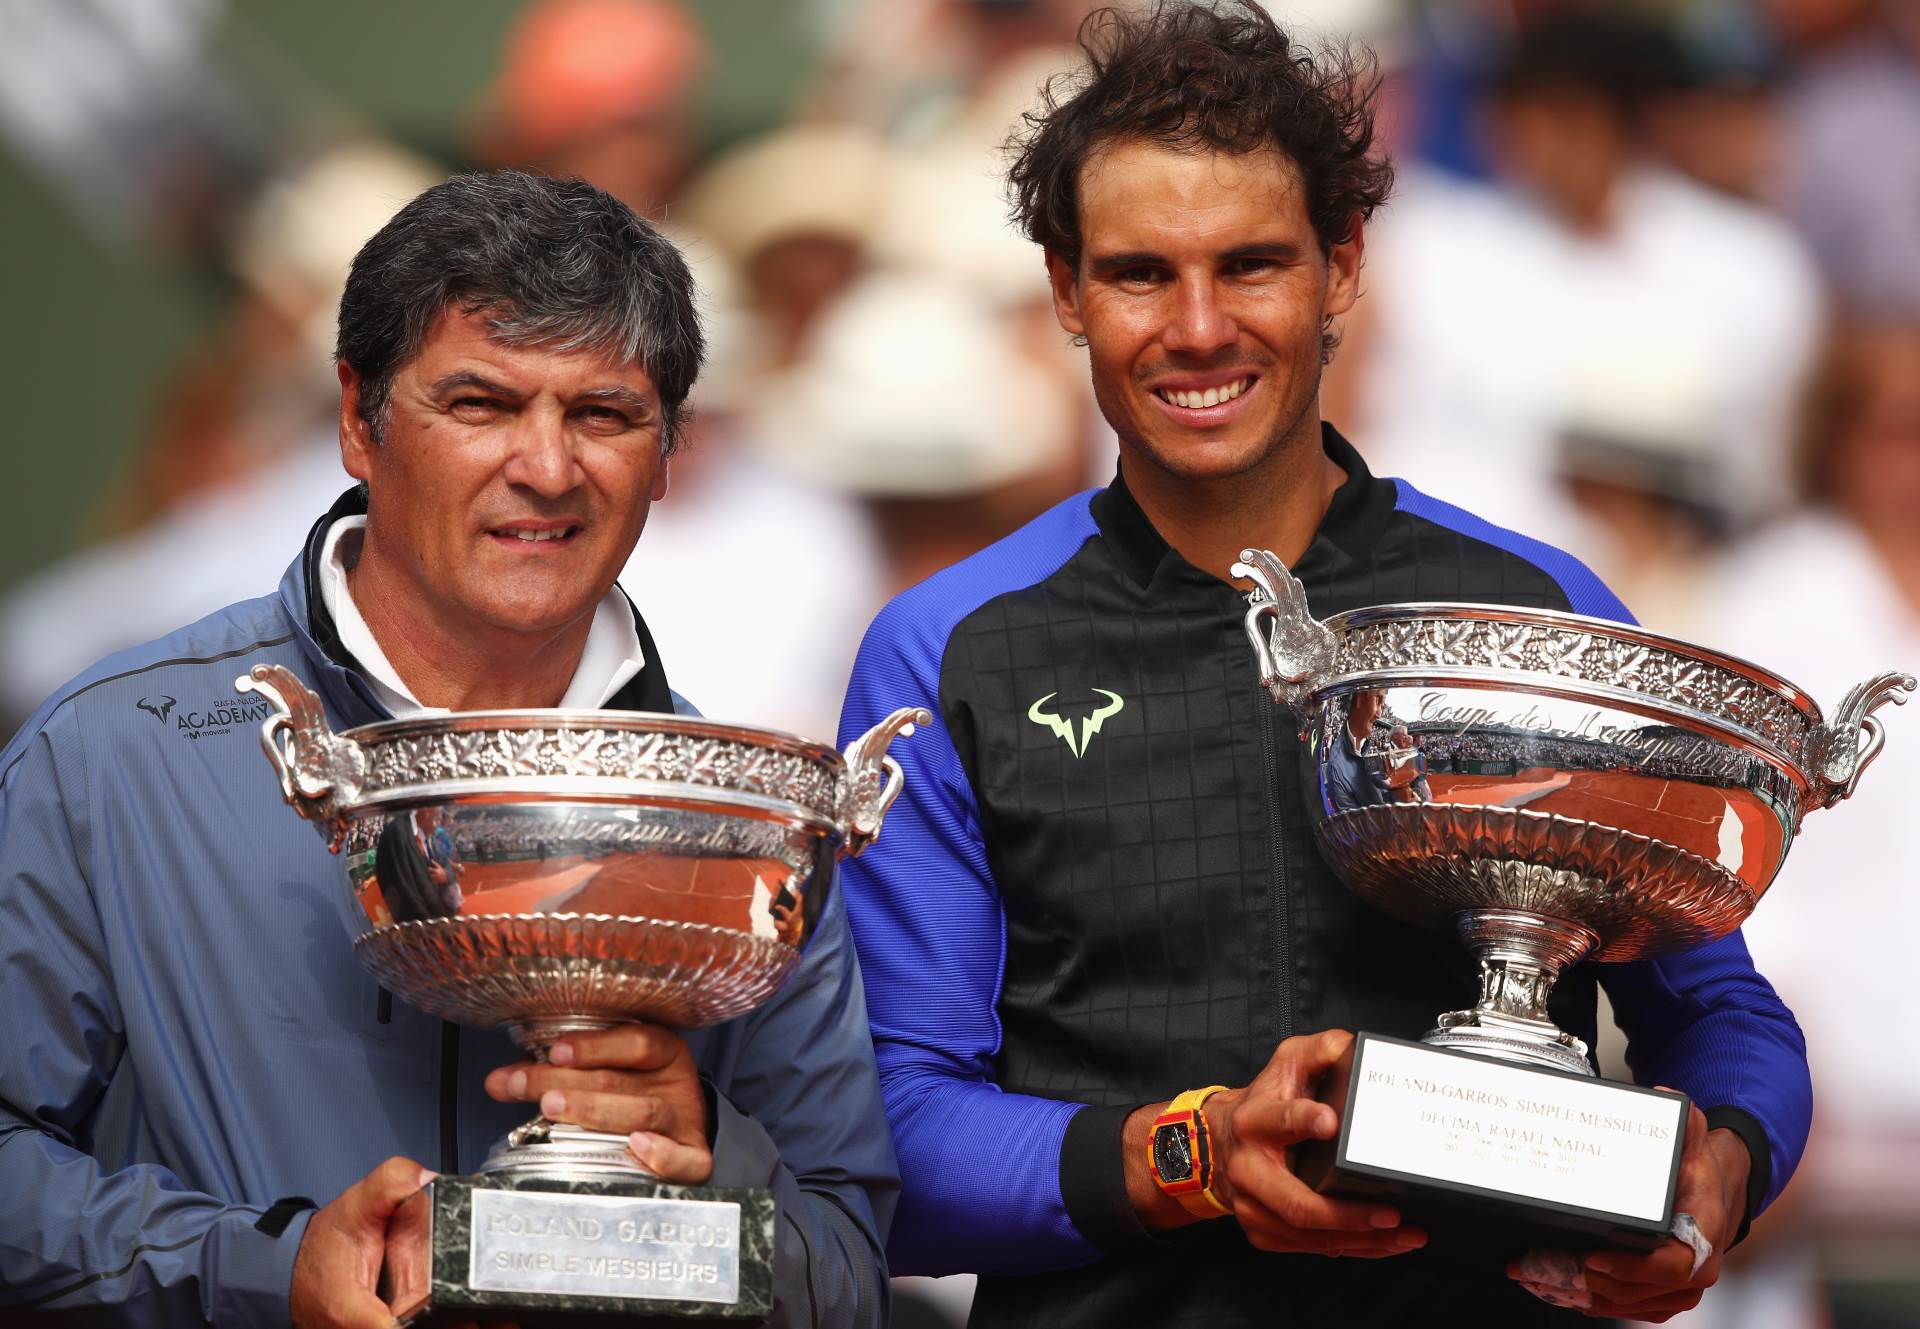  Rafael-Nadal-placa-porez-u-Spaniji-i-moze-da-kaze-svoje-misljenje-Toni-Nadal-kriticari 